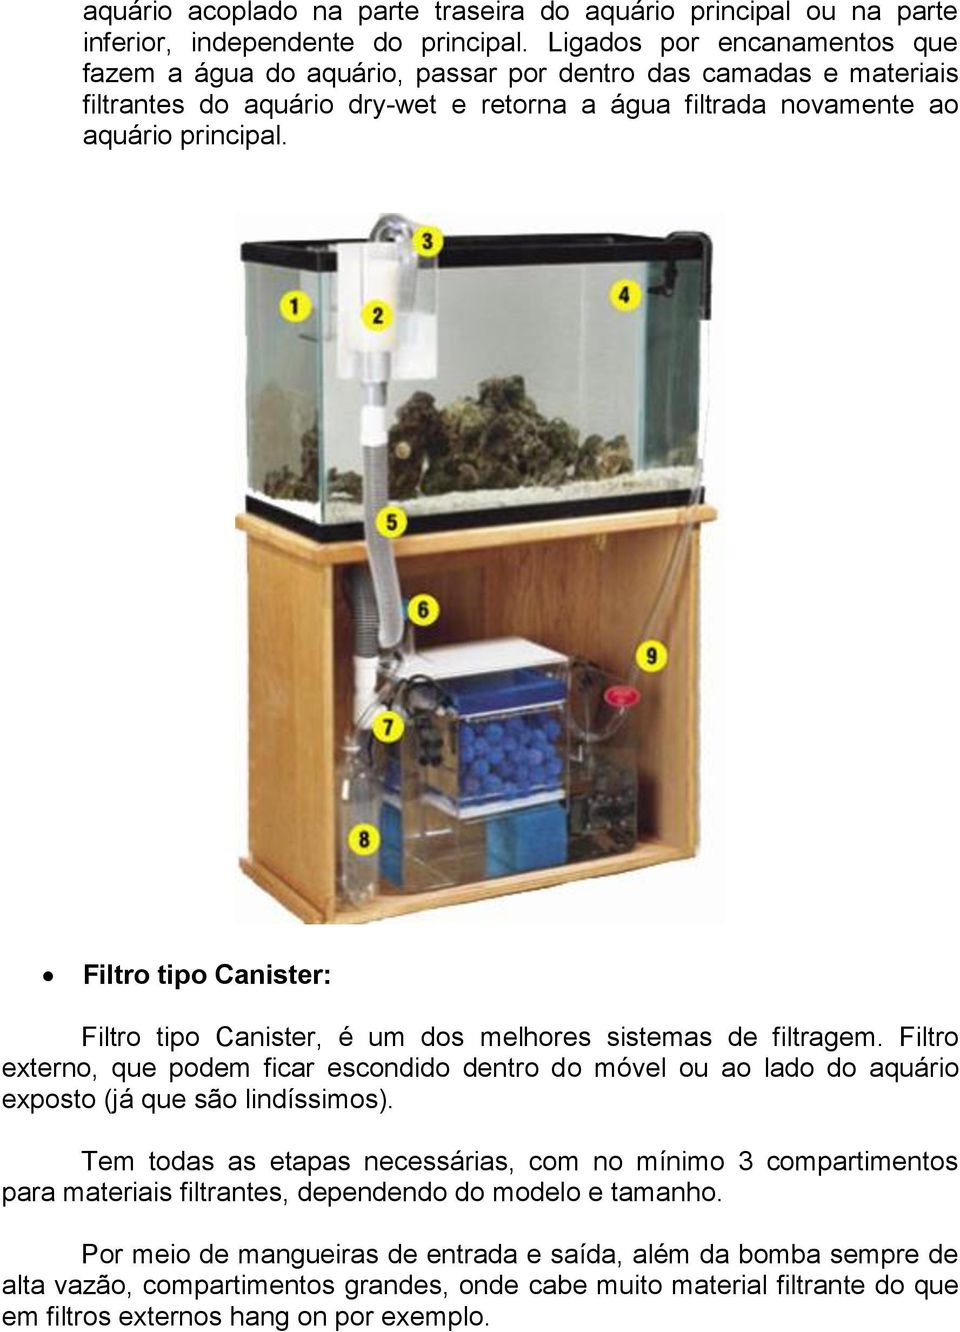 Filtro tipo Canister: Filtro tipo Canister, é um dos melhores sistemas de filtragem. Filtro externo, que podem ficar escondido dentro do móvel ou ao lado do aquário exposto (já que são lindíssimos).